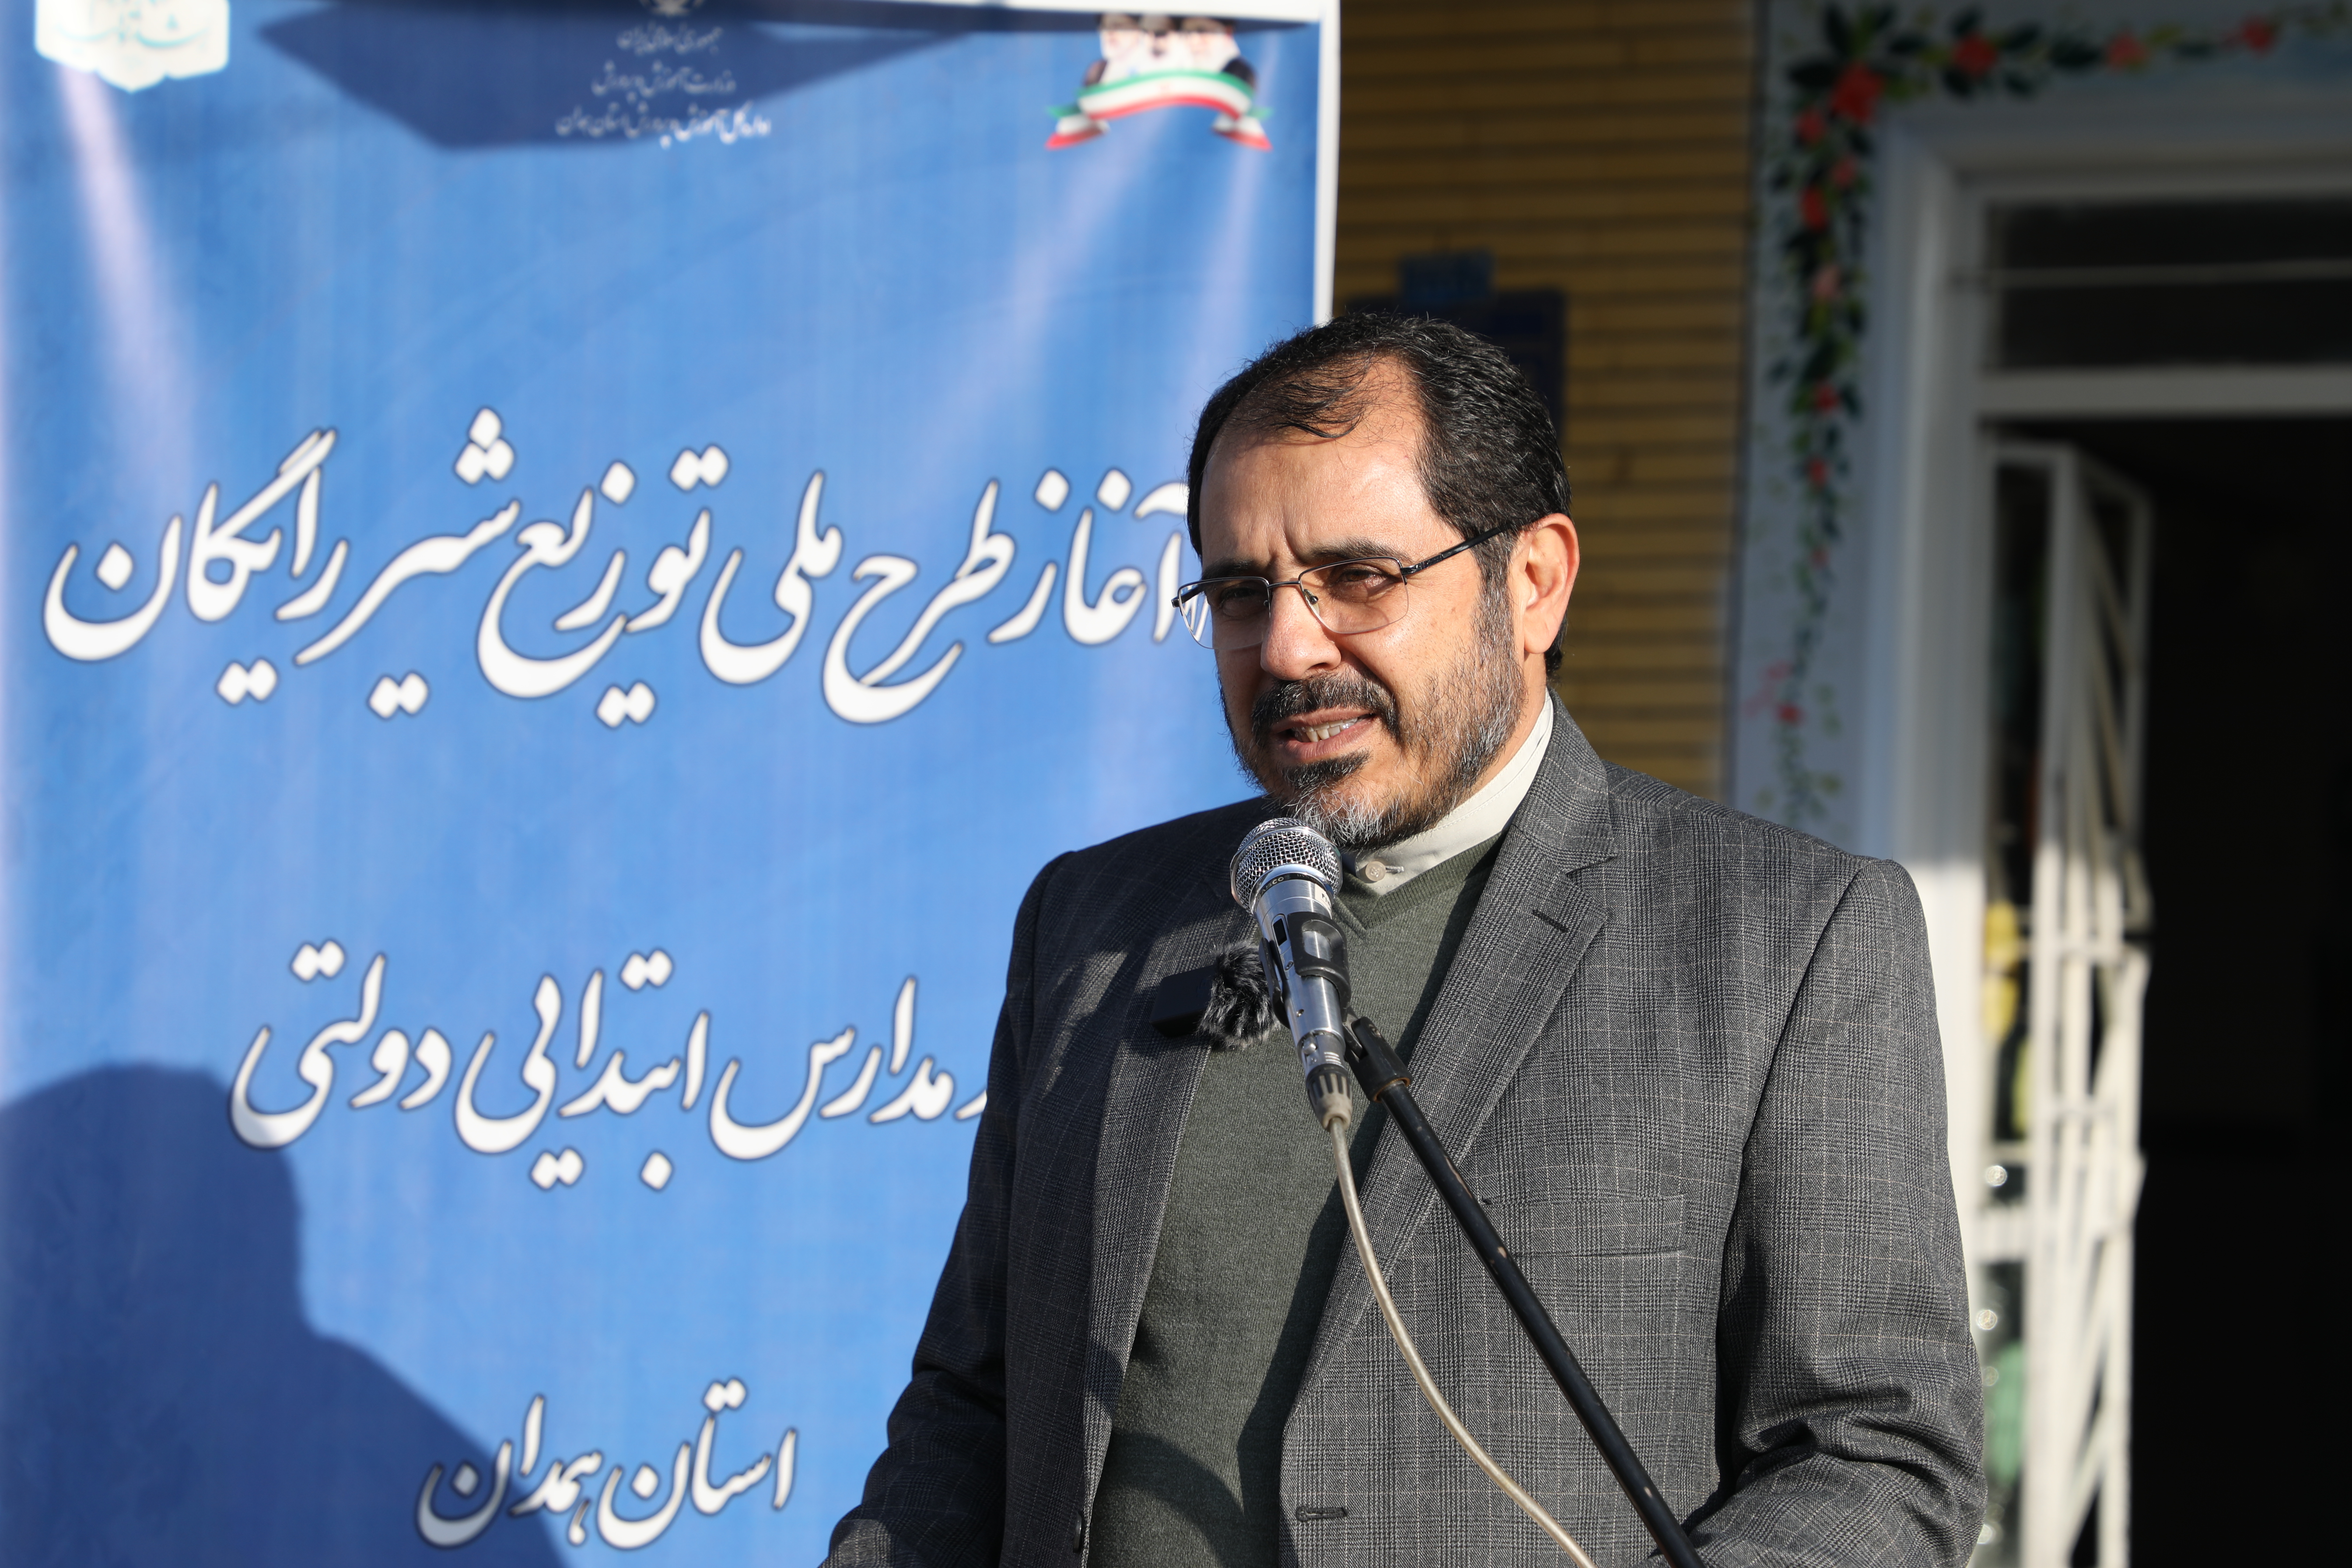 طرح ملی توزیع شیر رایگان در مدارس ابتدایی دولتی استان همدان آغاز شد